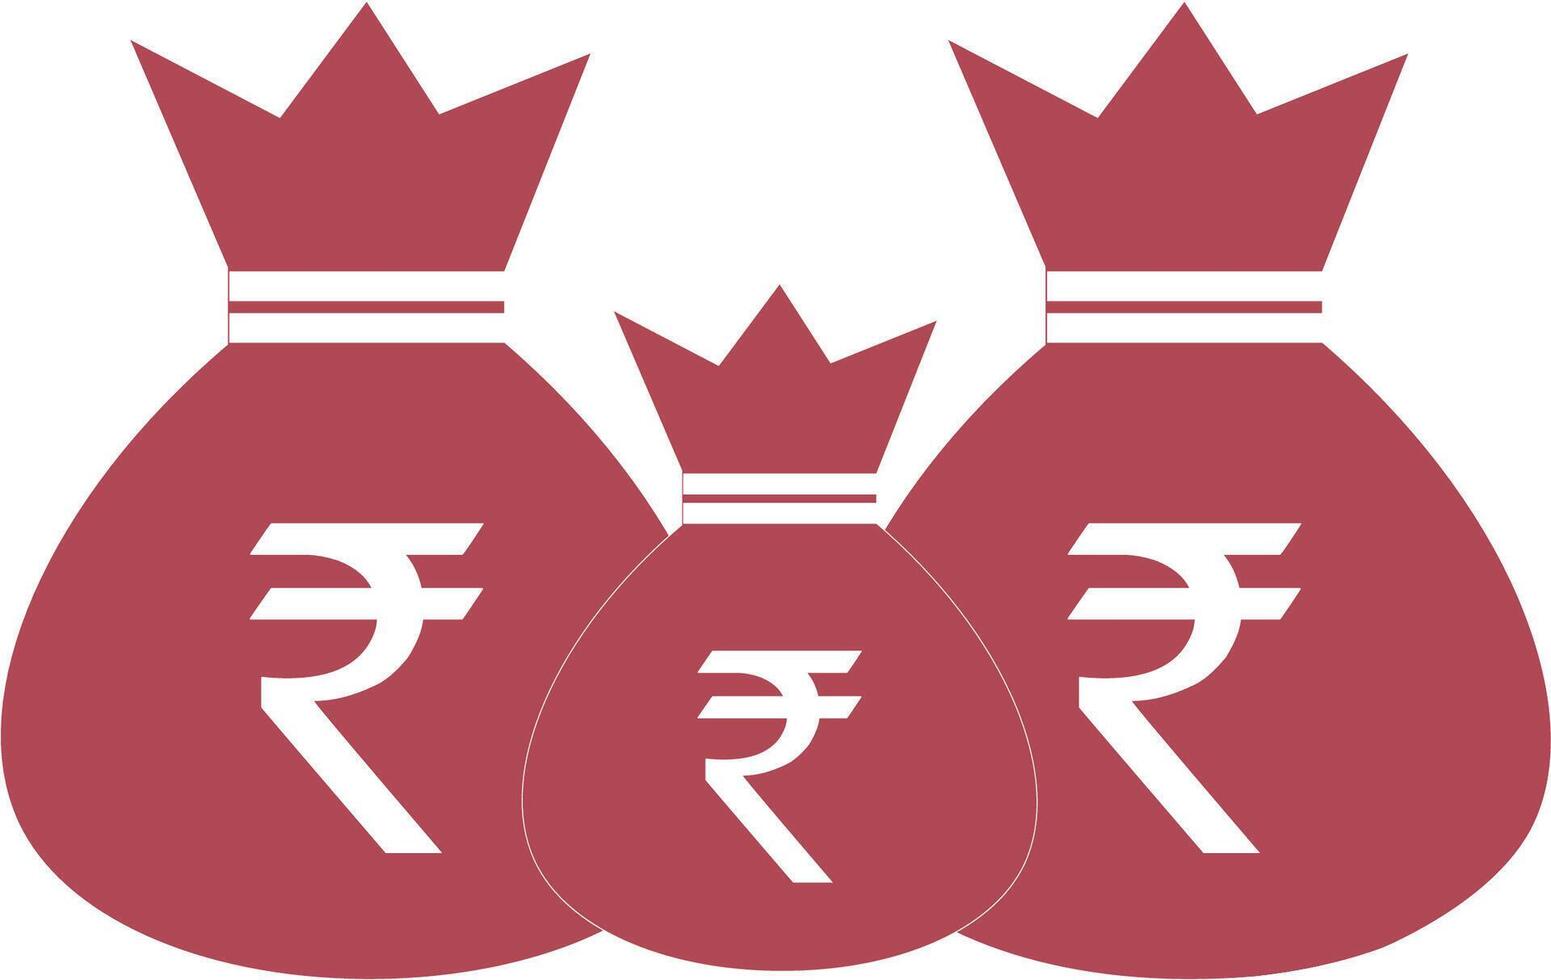 goud munten stack met roepie valuta teken. Indisch contant geld financieel symbool. modern vector economie.